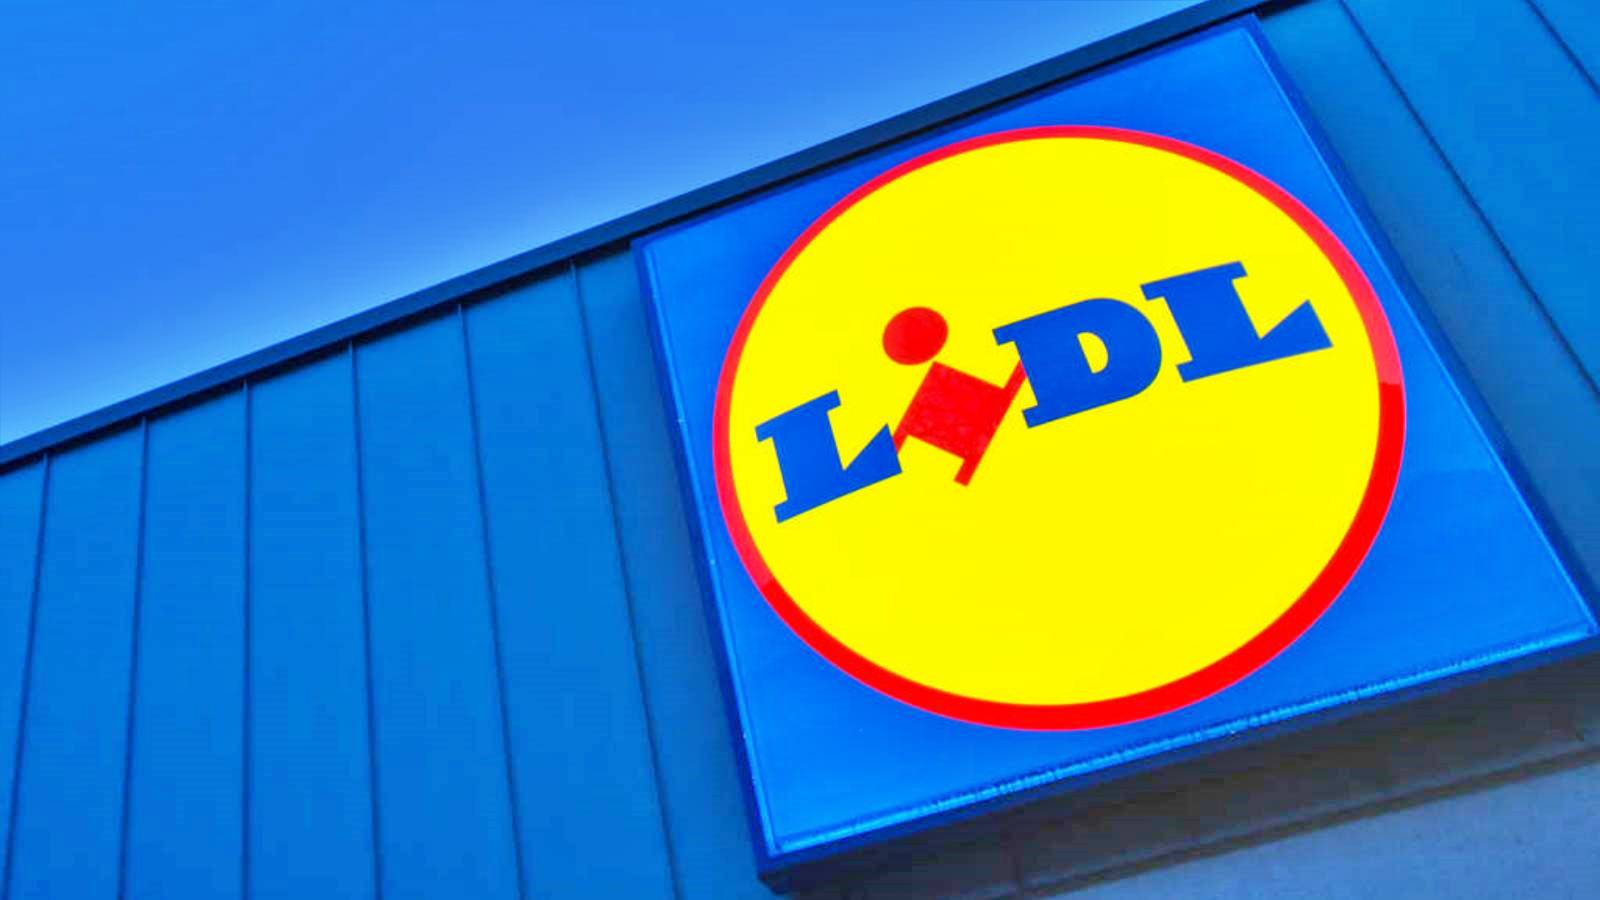 LIDL Rumunia zmienia wszystkie sklepy 1 grudnia